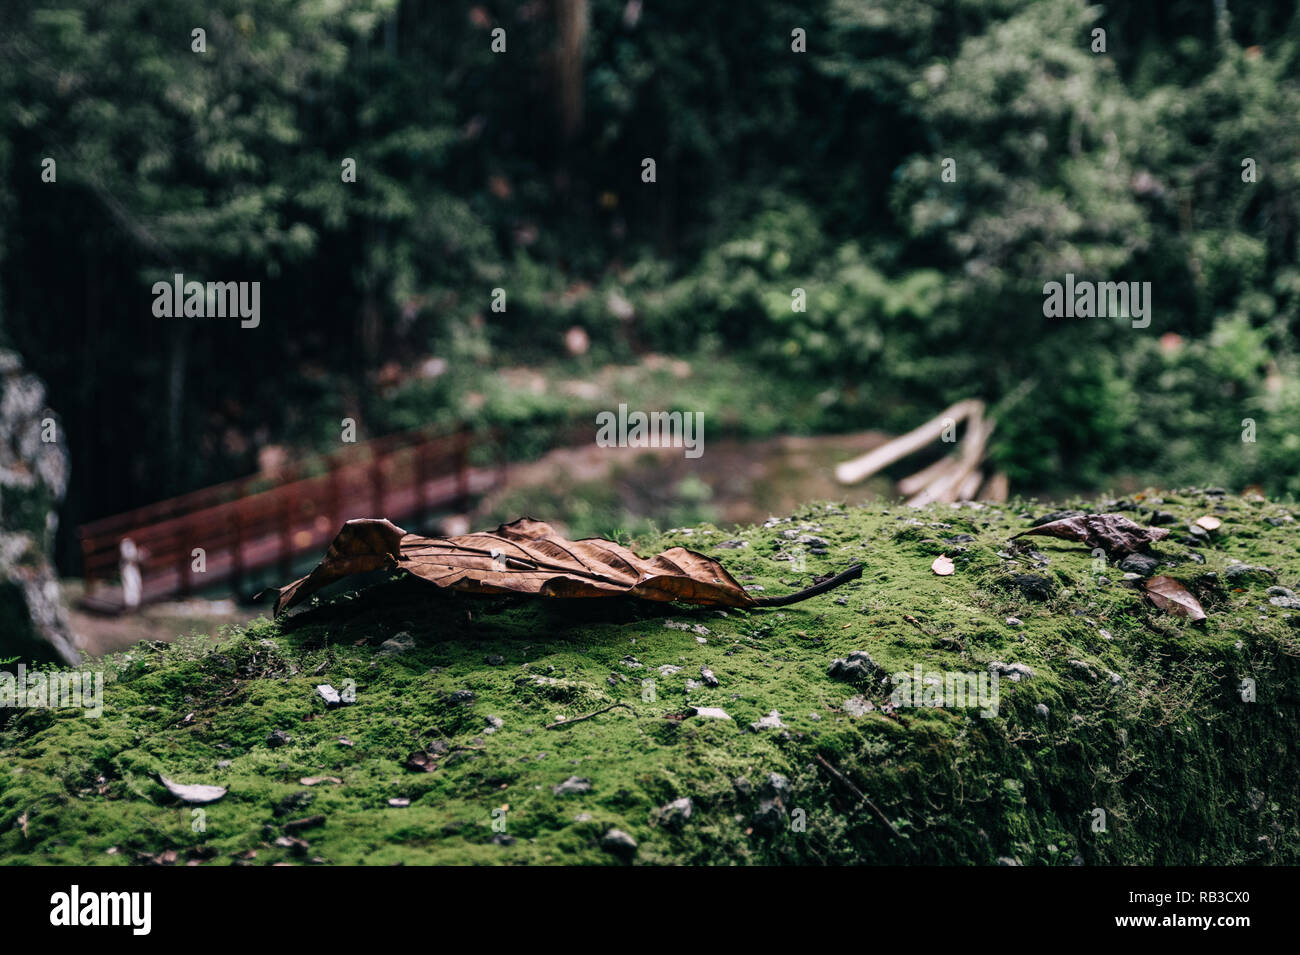 Braun Blatt liegt auf einer grünen Moos bedeckt Rock im Dschungel Wald von Bali, Indonesien. Es ist eine grüne und friedliche Atmosphäre, sehr entspannend Stockfoto